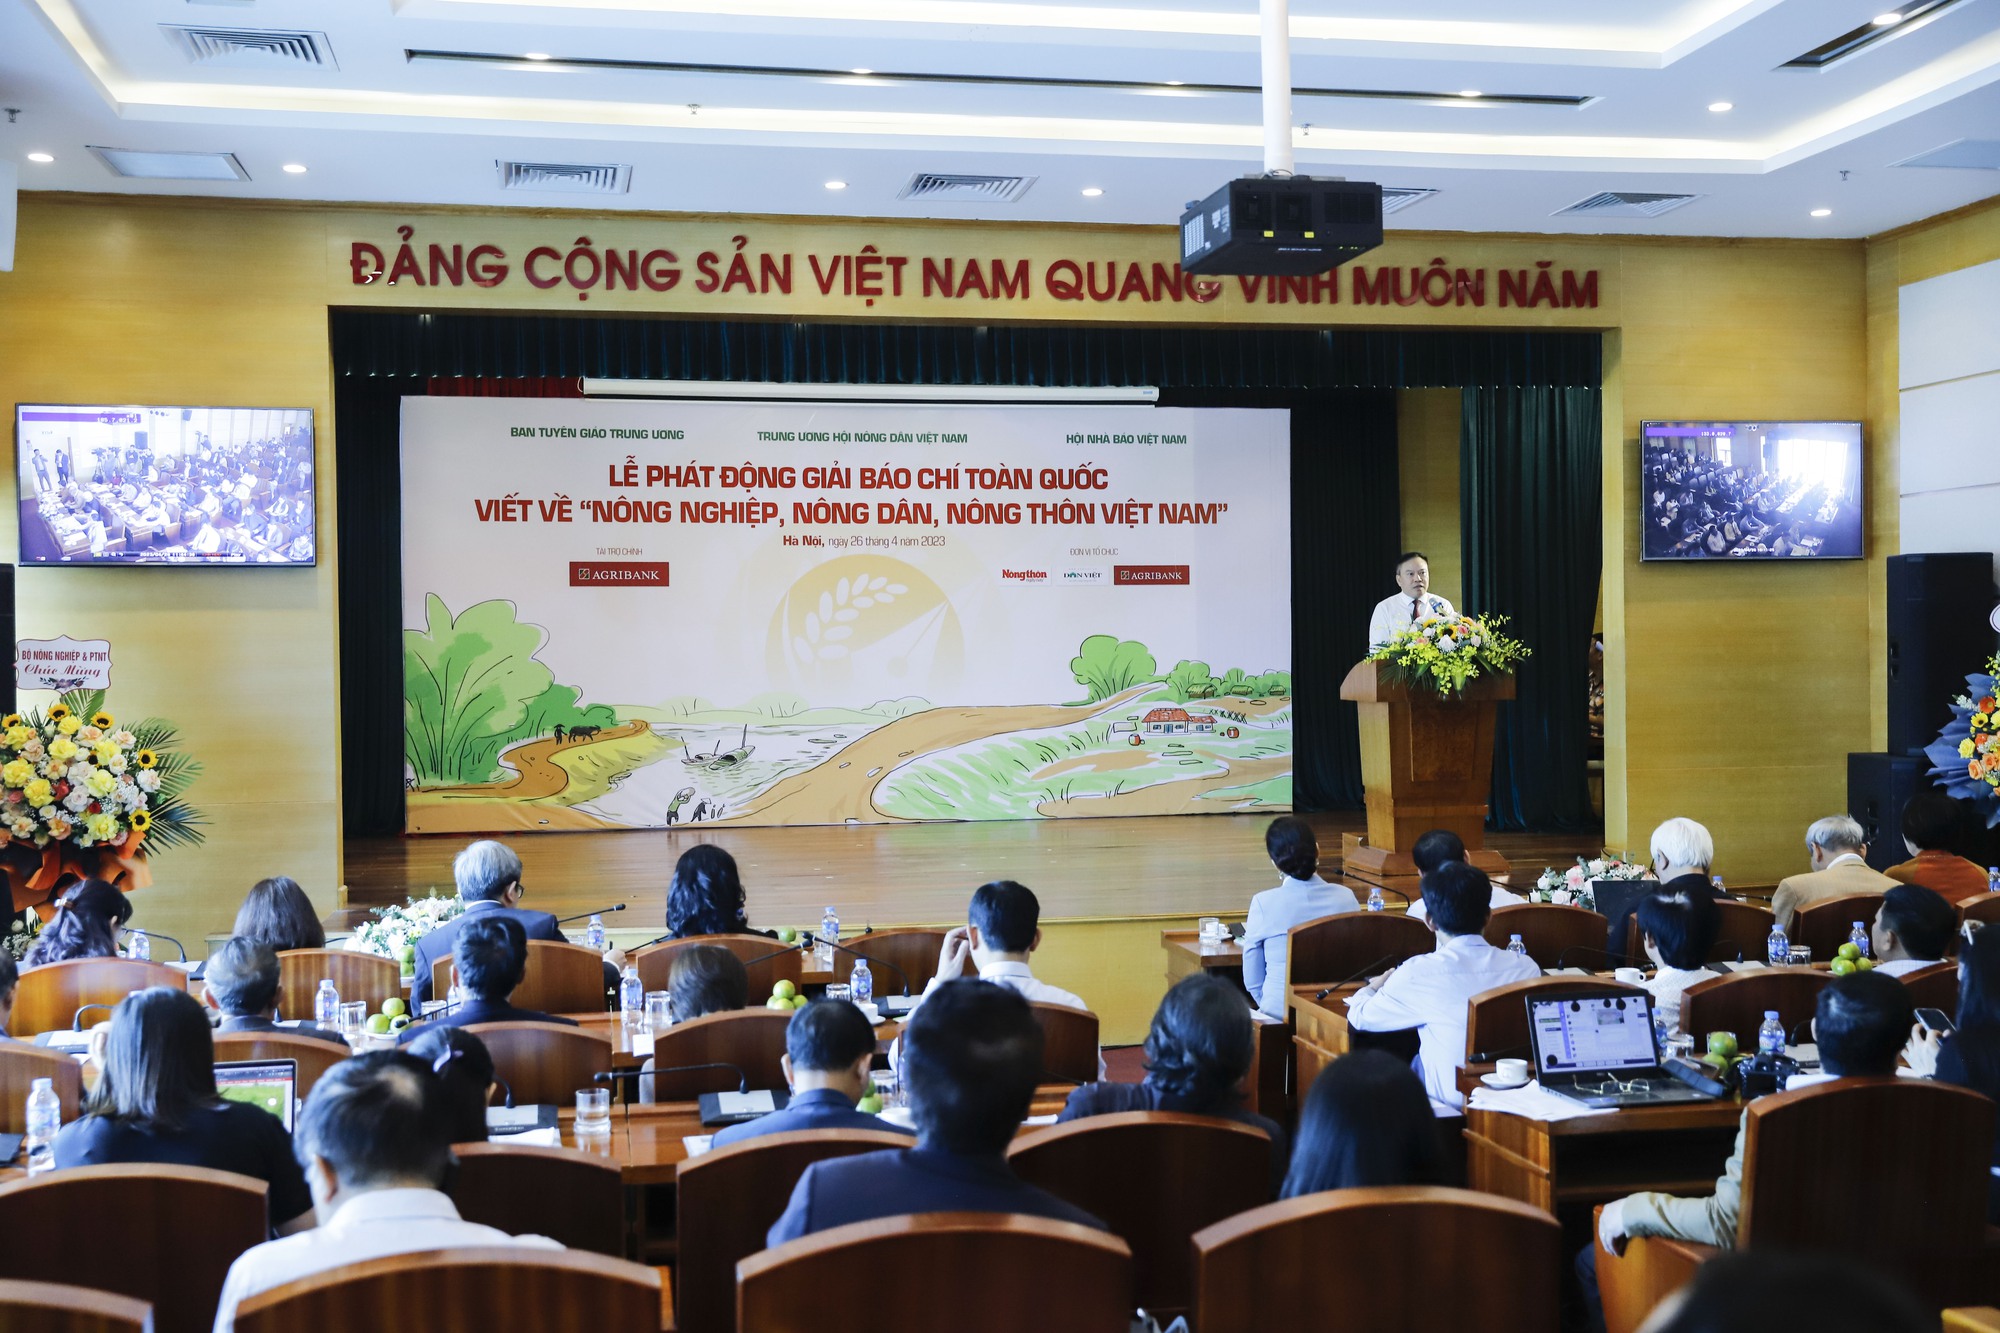 Phó Chủ tịch T.Ư Hội NDVN Bùi Thị Thơm: Đưa tiếng nói, hình ảnh của nông nghiệp, nông dân, nông thôn Việt Nam lan toả - Ảnh 2.